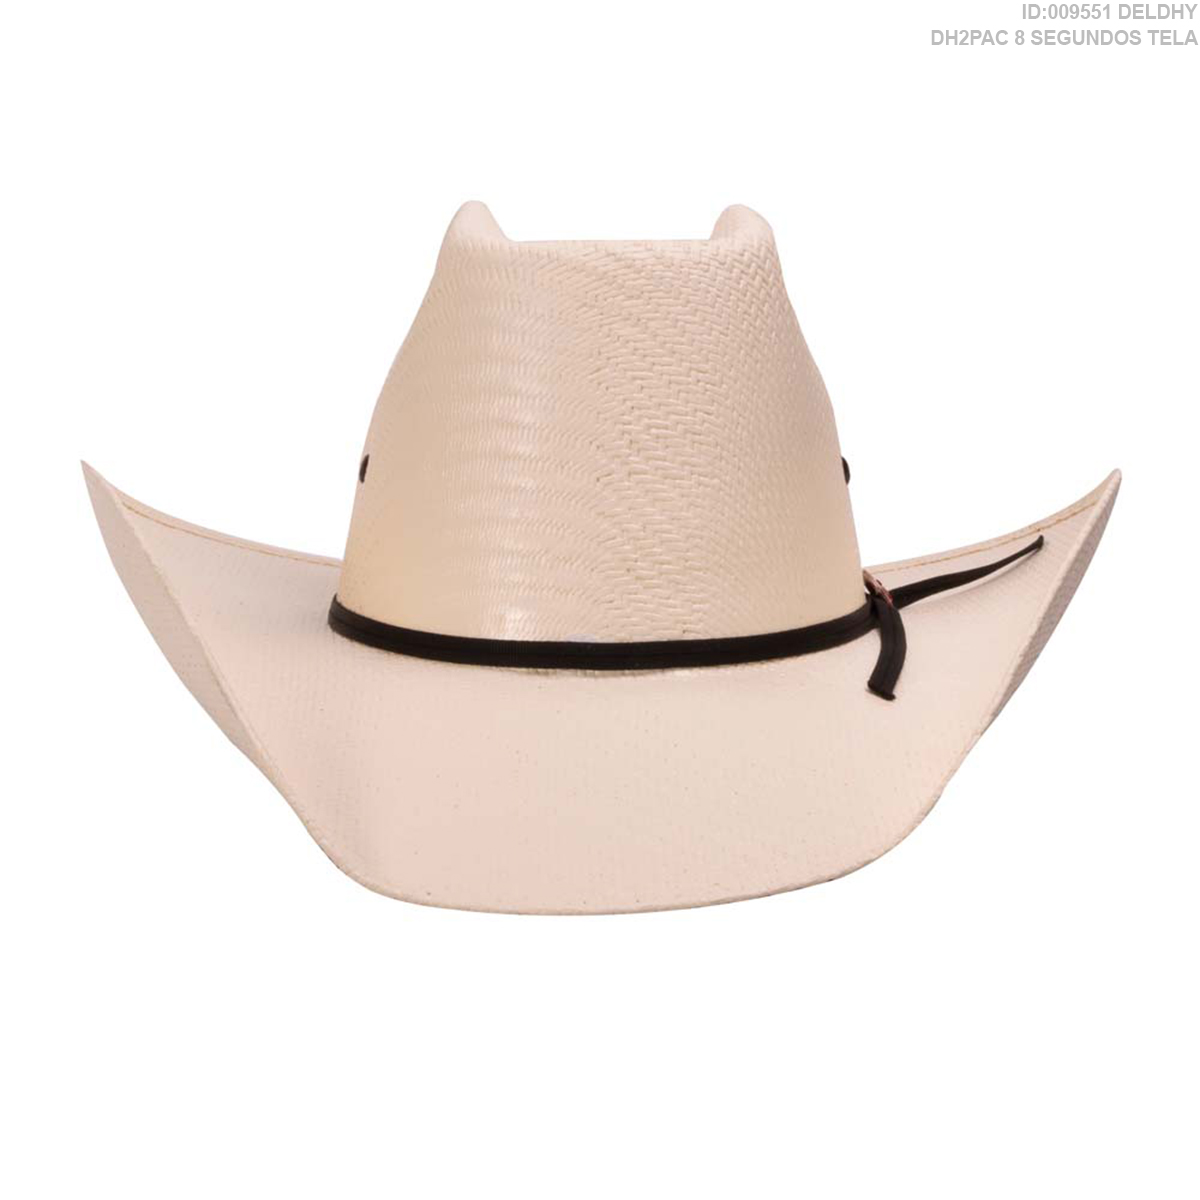 Sombrero Deldhy Dh2Pac 8 Segundos Tela - Color: Blanco Western